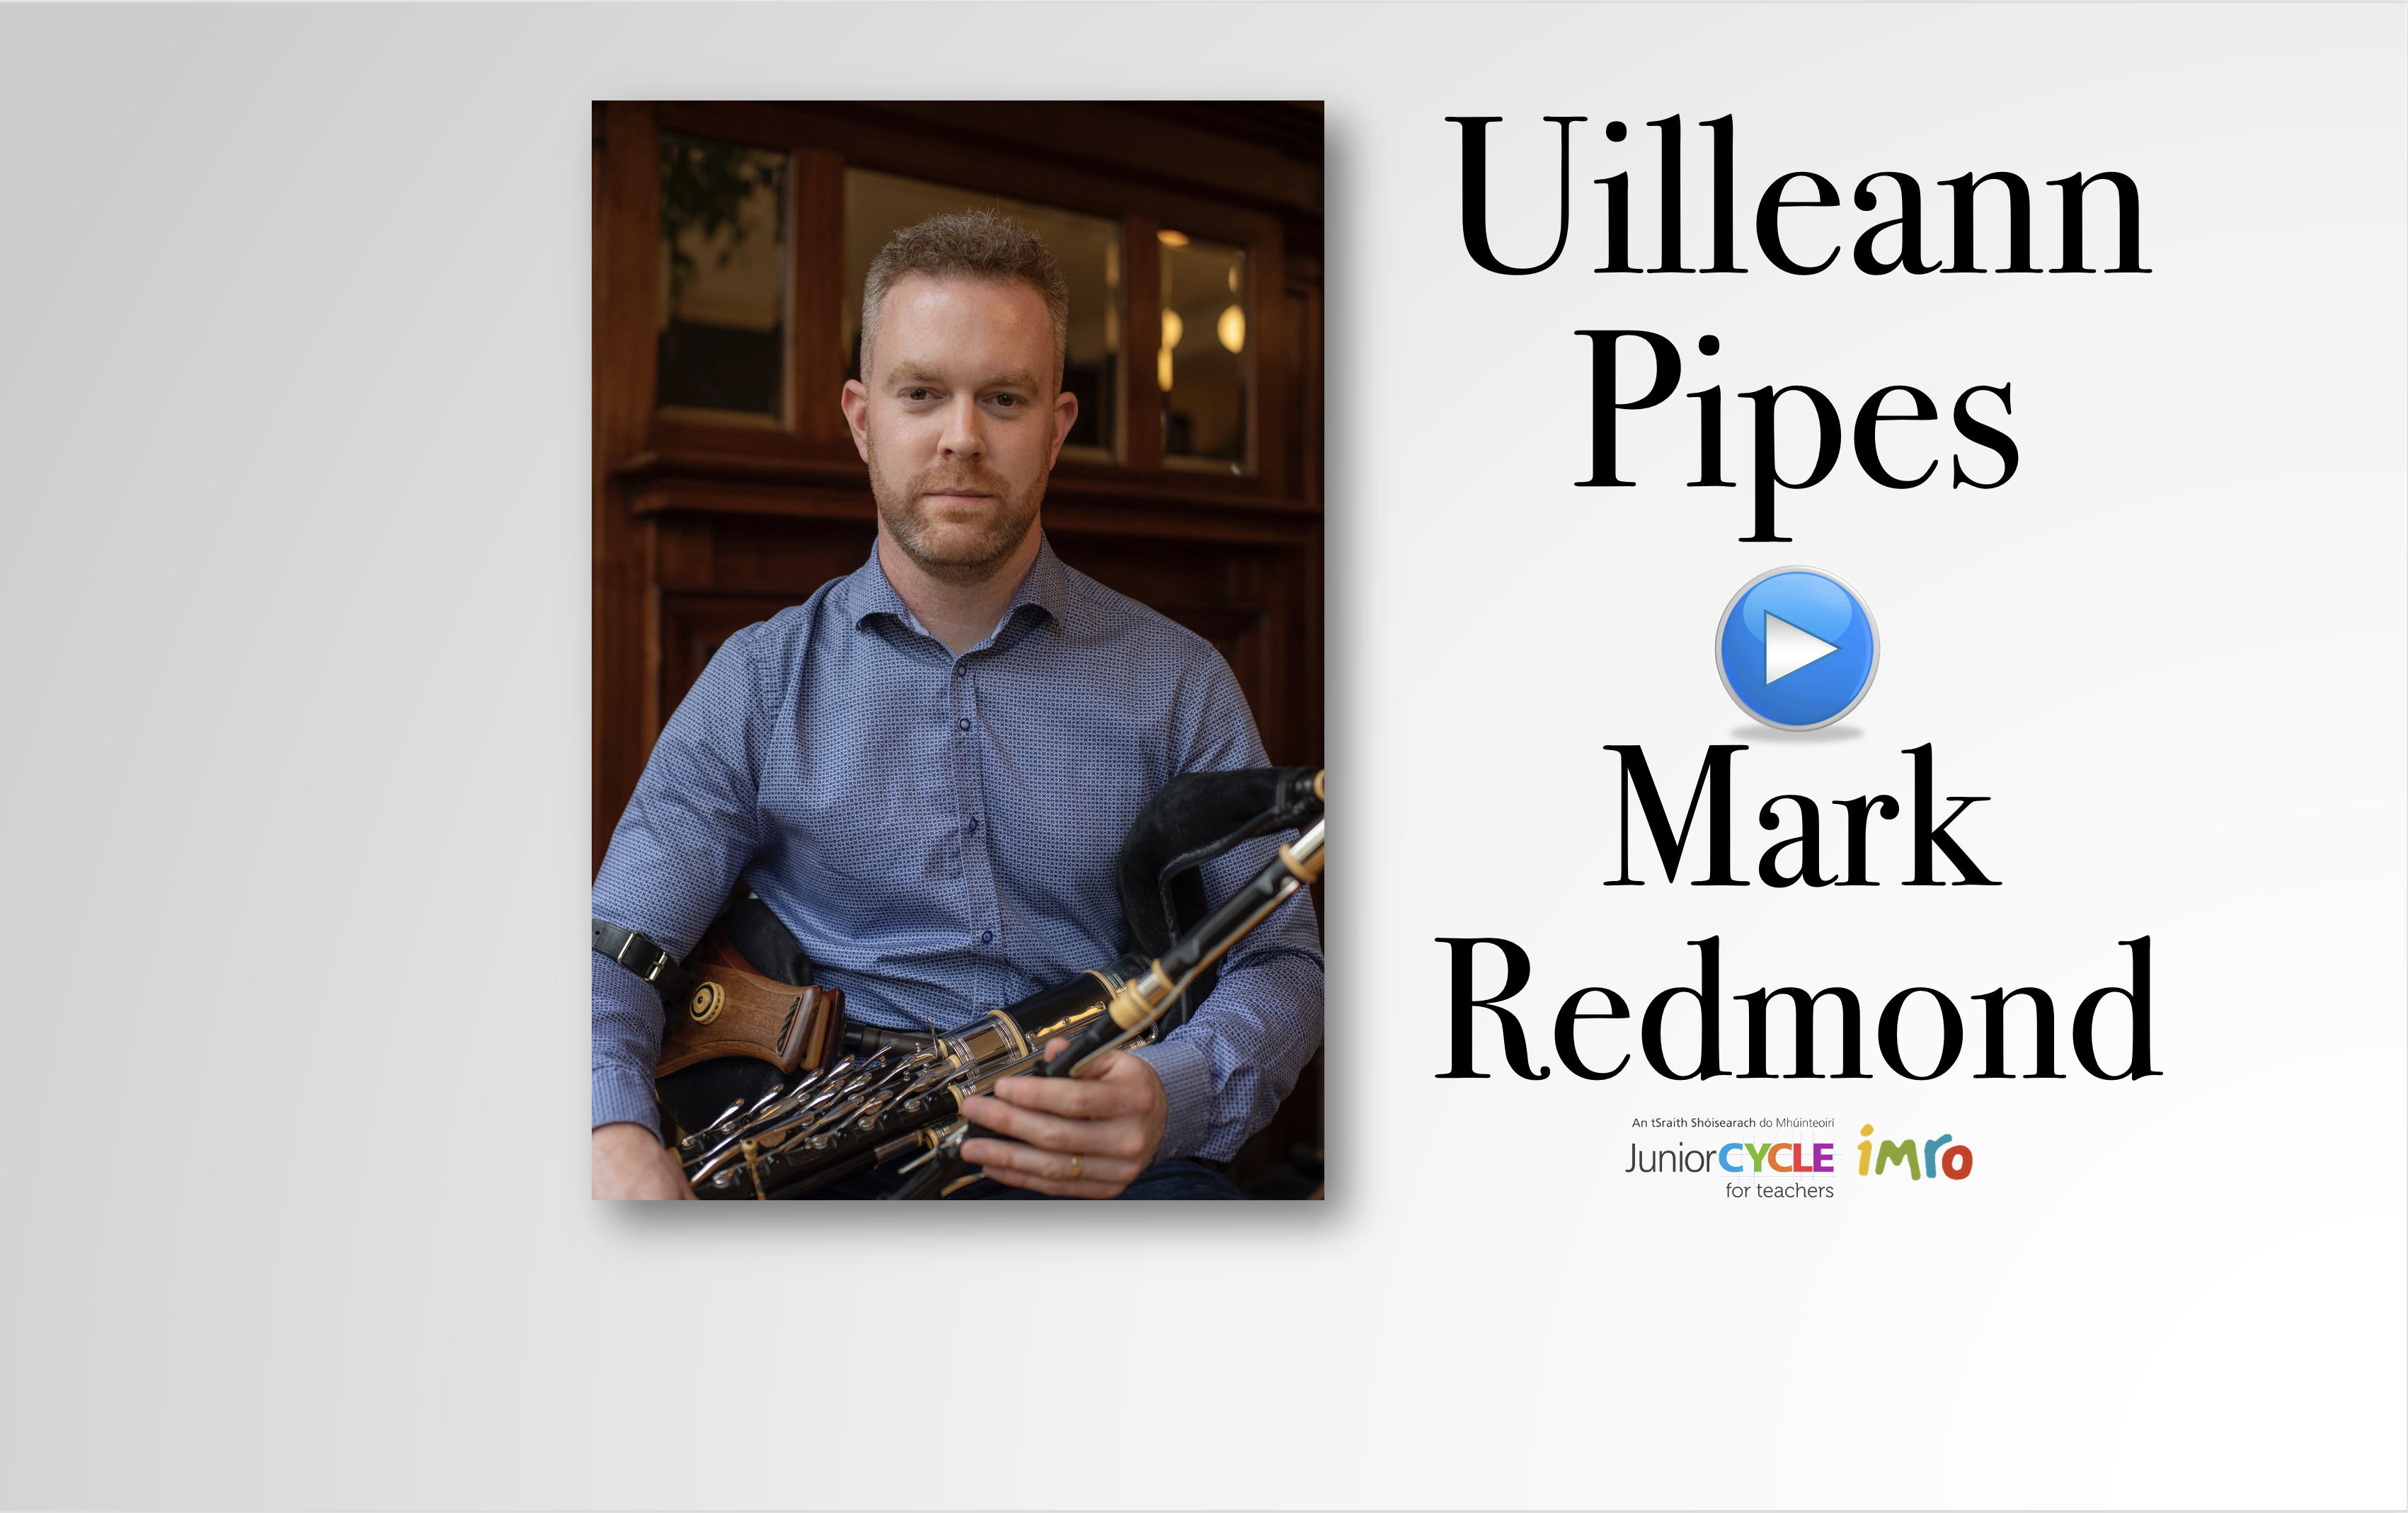 Meet the Uilleann Pipes